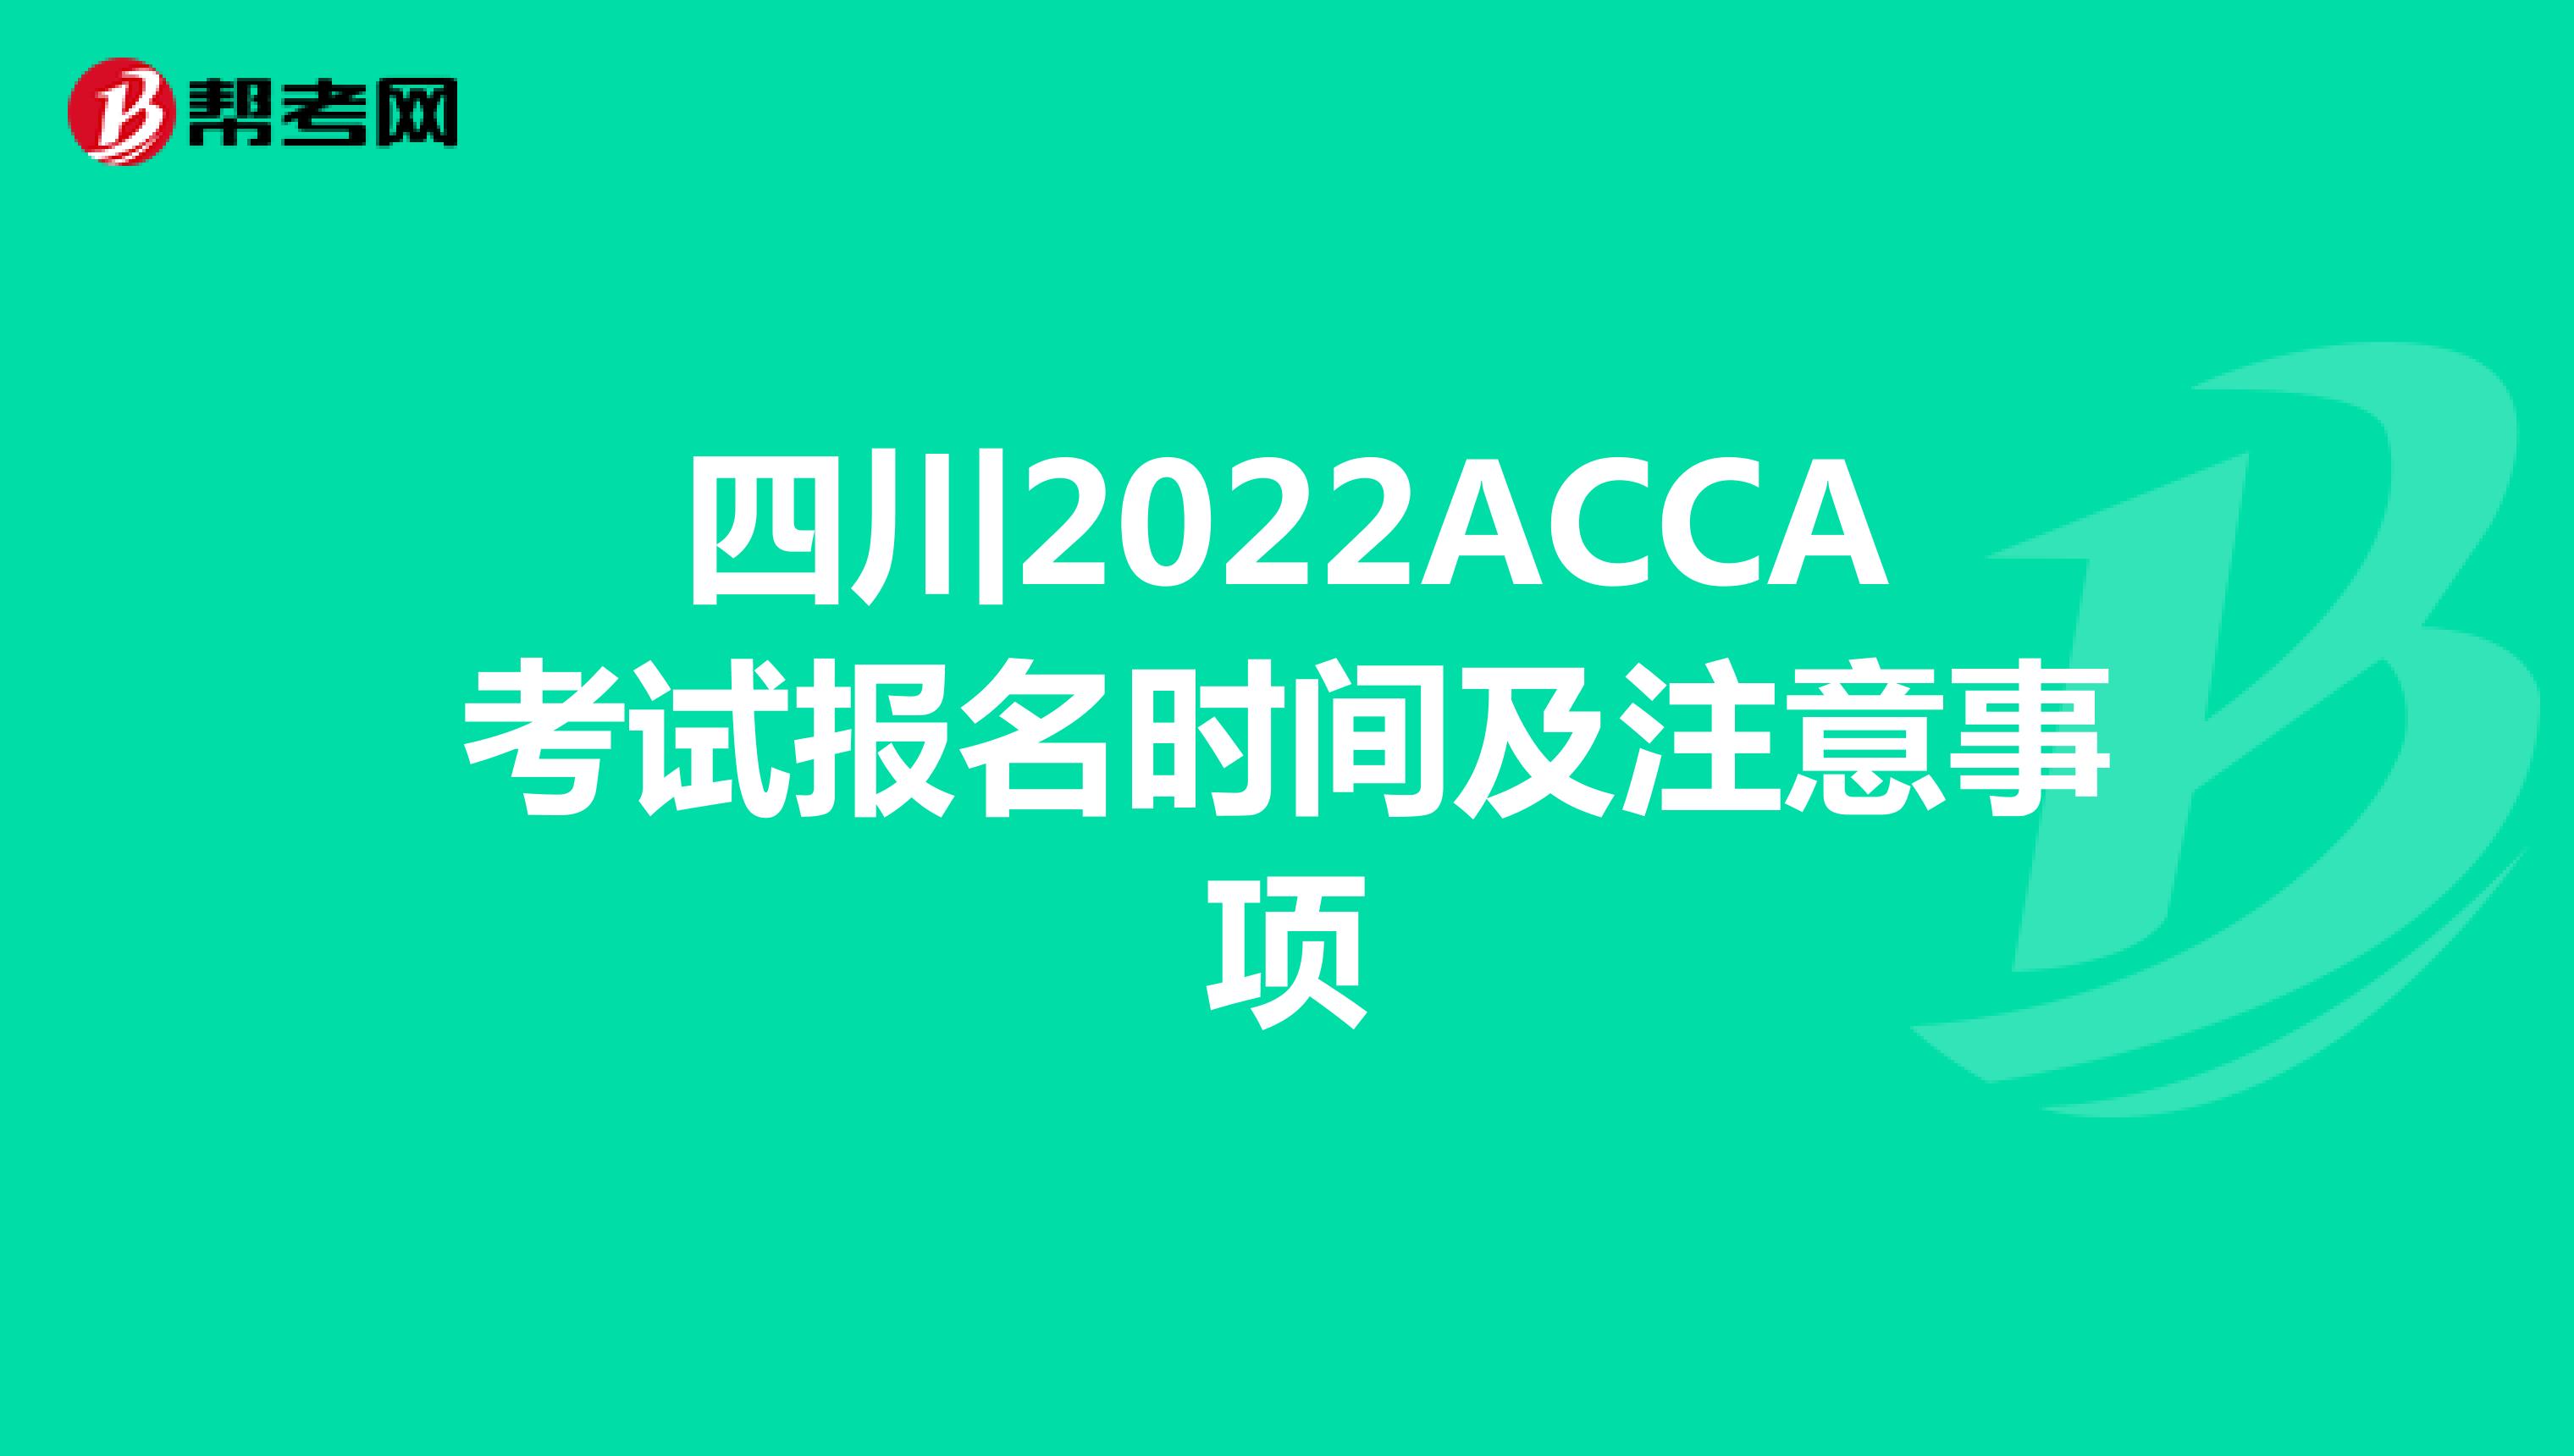 四川2022ACCA考试报名时间及注意事项